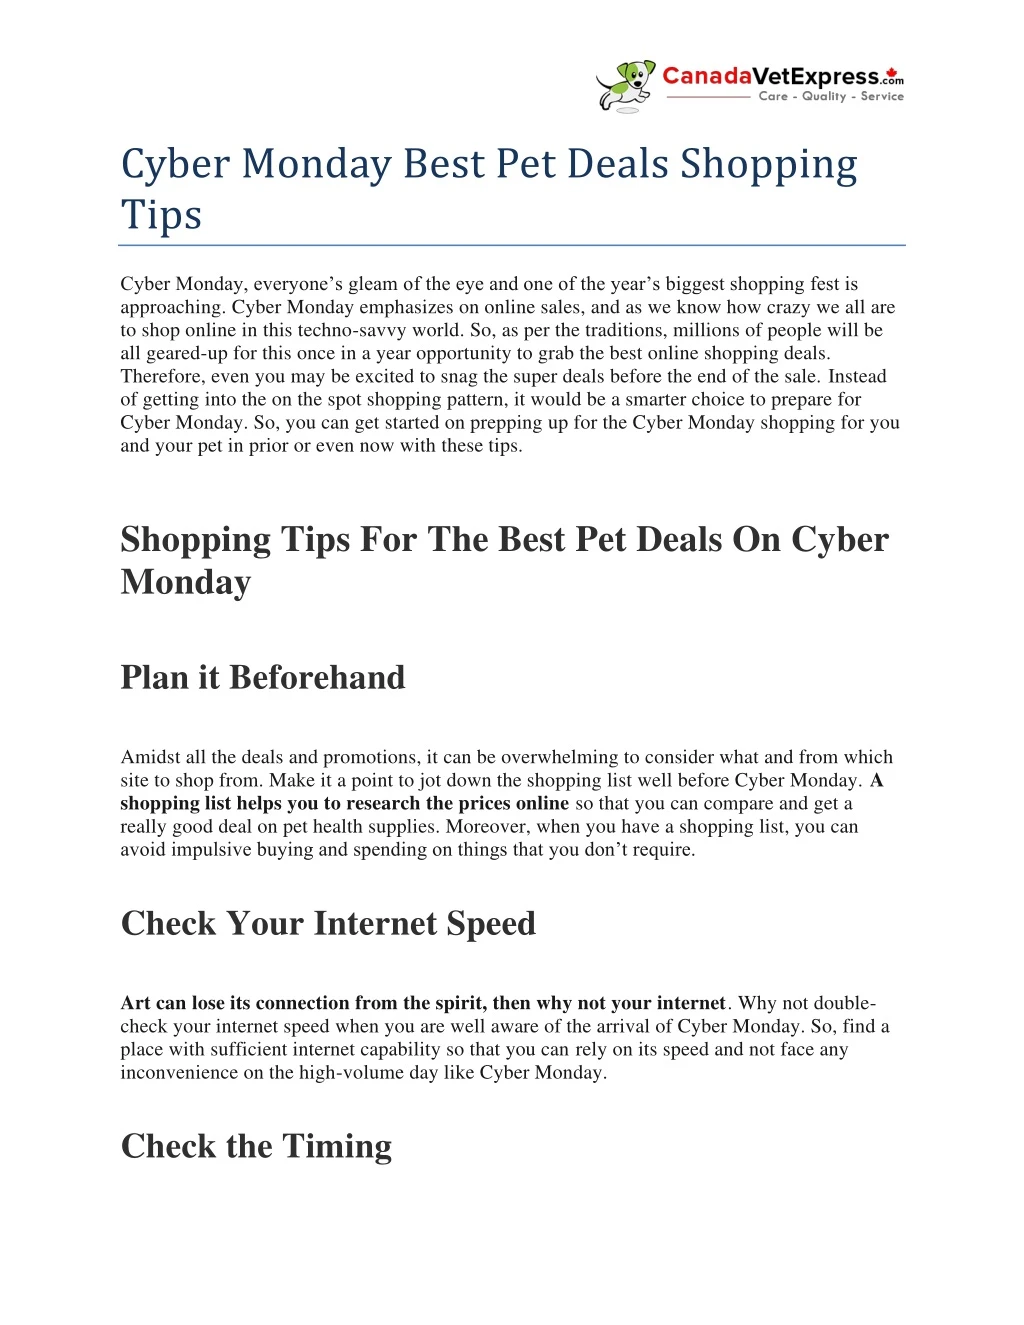 cyber monday best pet deals shopping tips